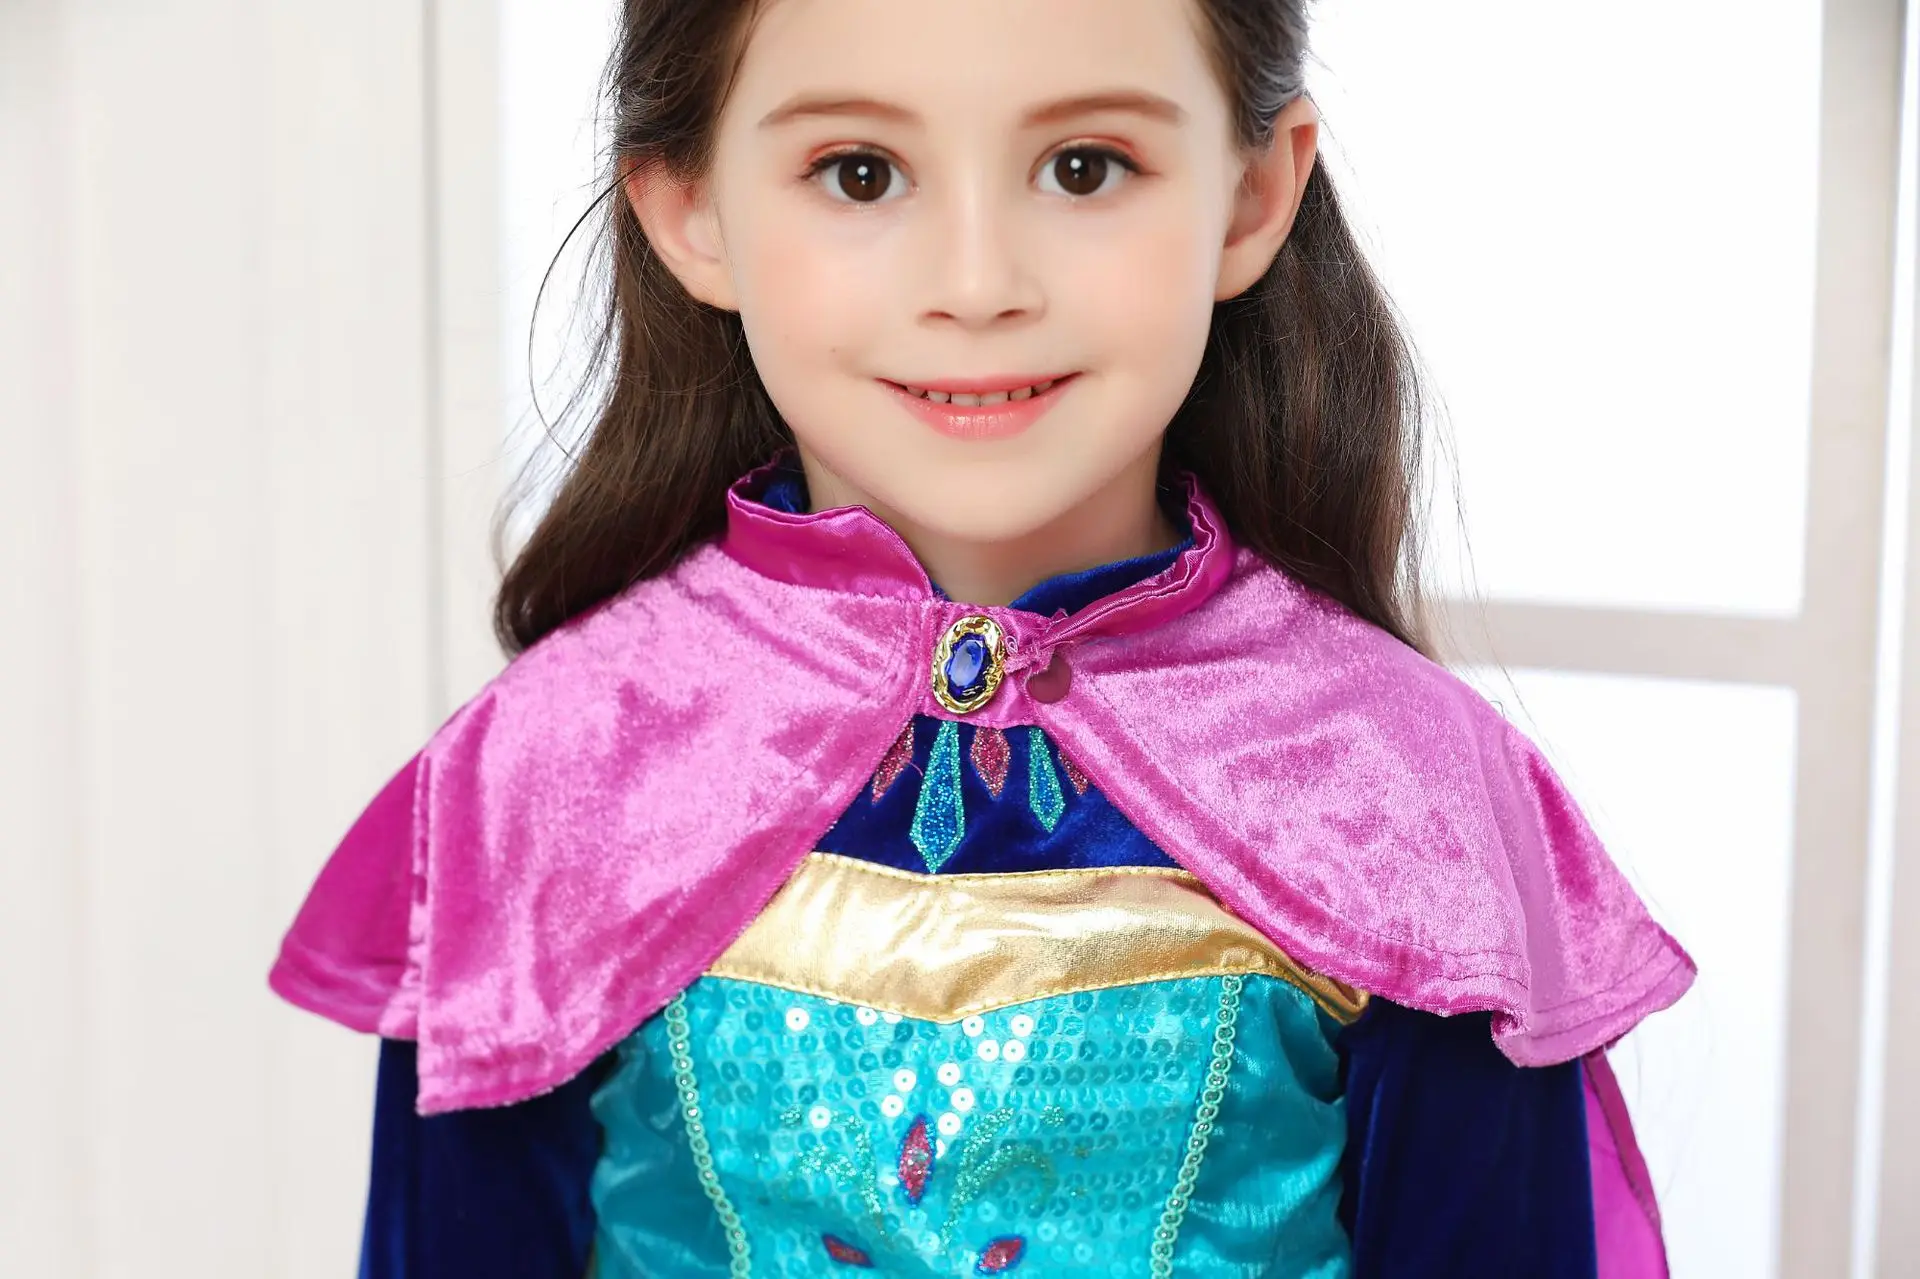 Платье принцессы Анны и Эльзы для девочек; Карнавальный костюм для детей; маскарадный костюм принцессы; нарядное платье с накидкой; костюм Снежной Королевы на Хэллоуин